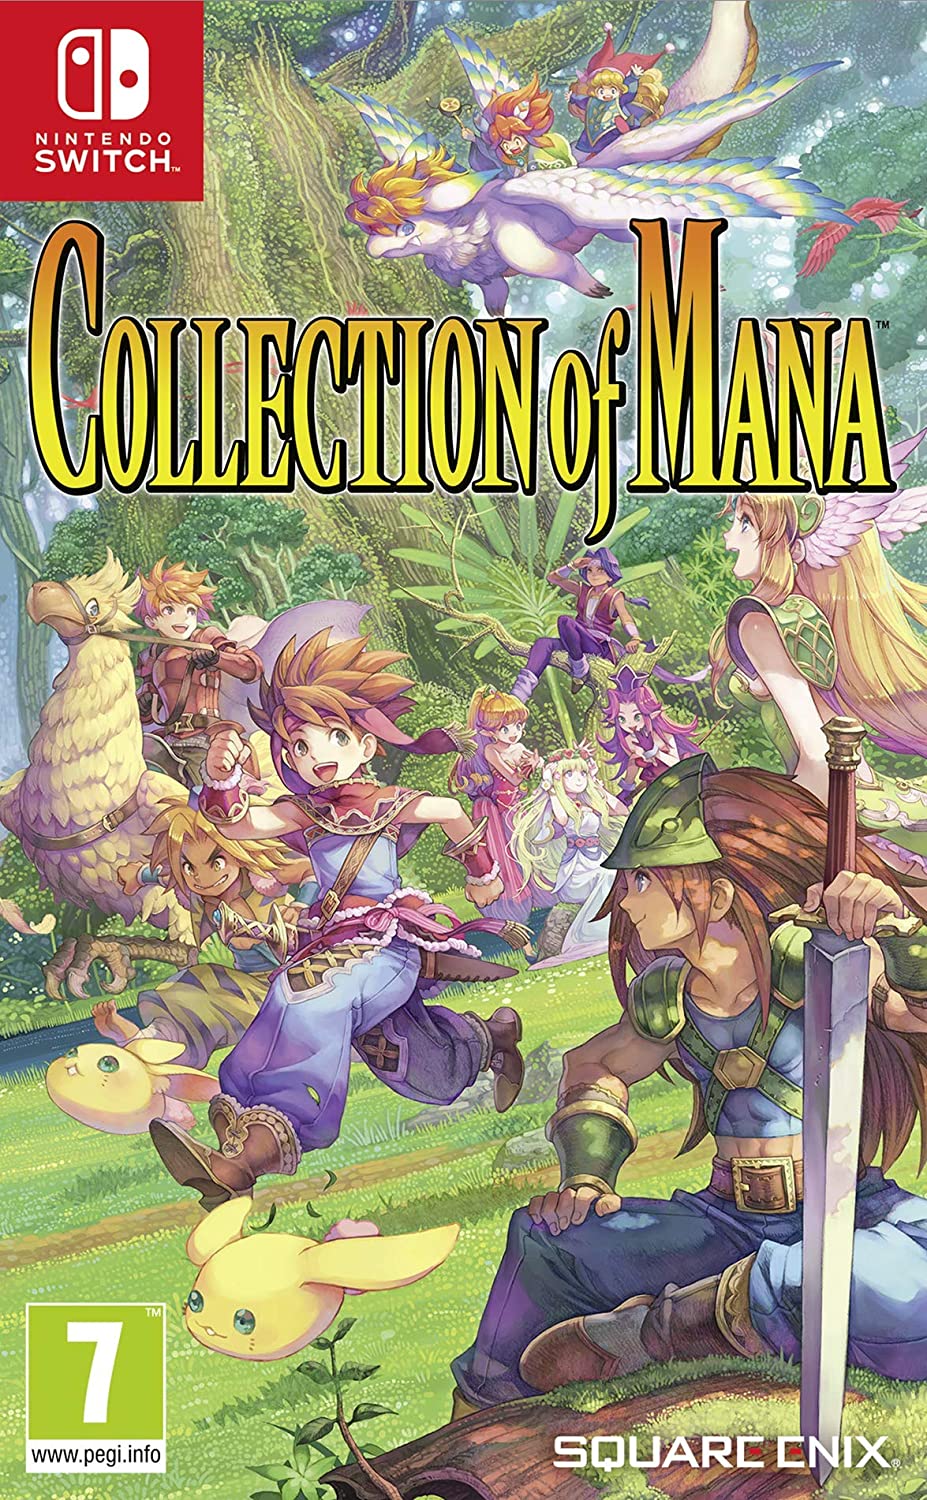 Sammlung von Mana Nintendo Switch-Spiel